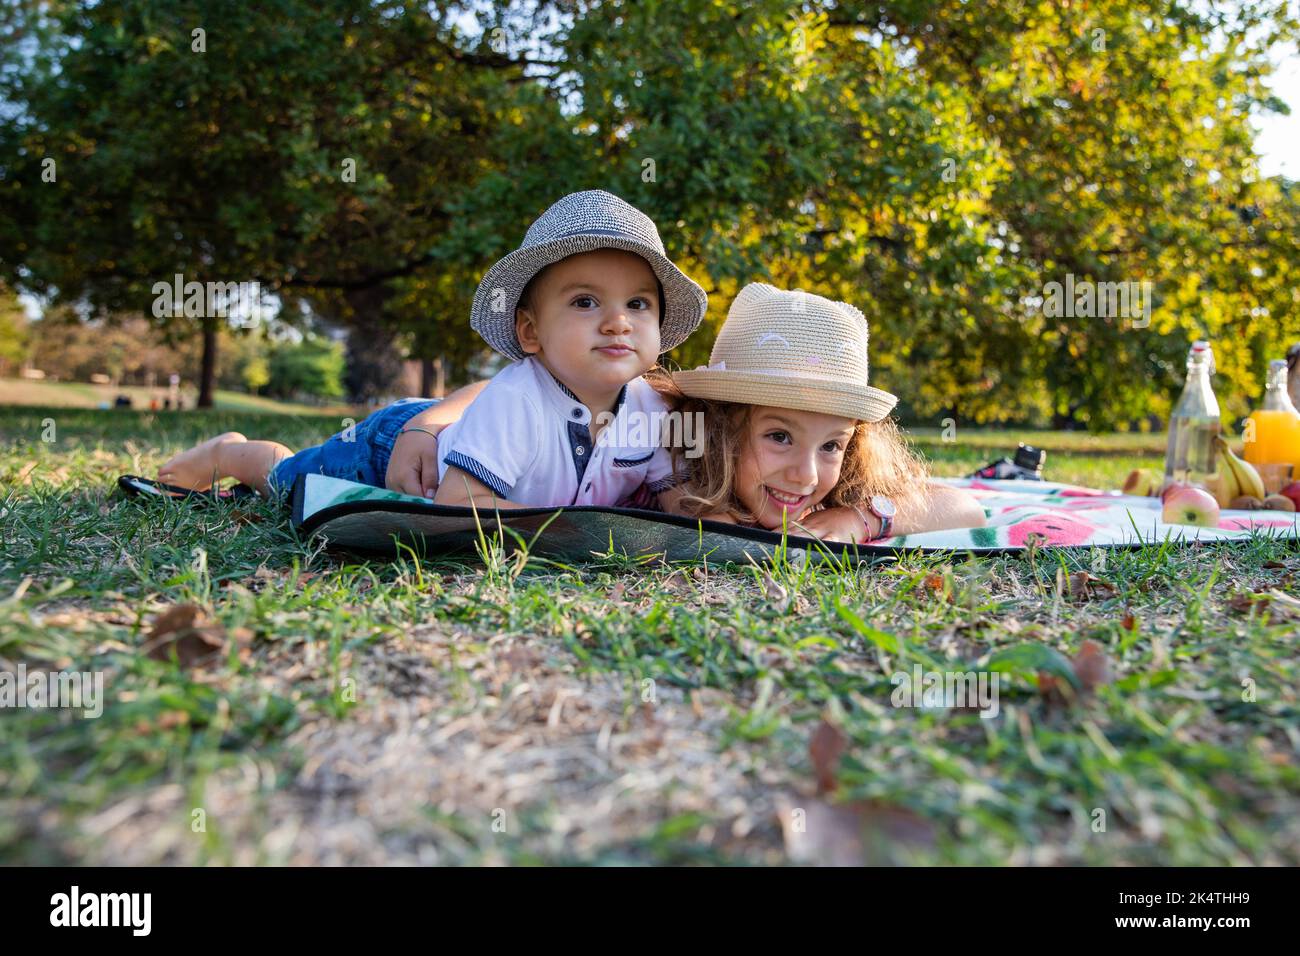 Zwei schöne und fröhliche Kinder, die auf der Picknickmatte liegen, blicken amüsiert nach vorne. Stockfoto